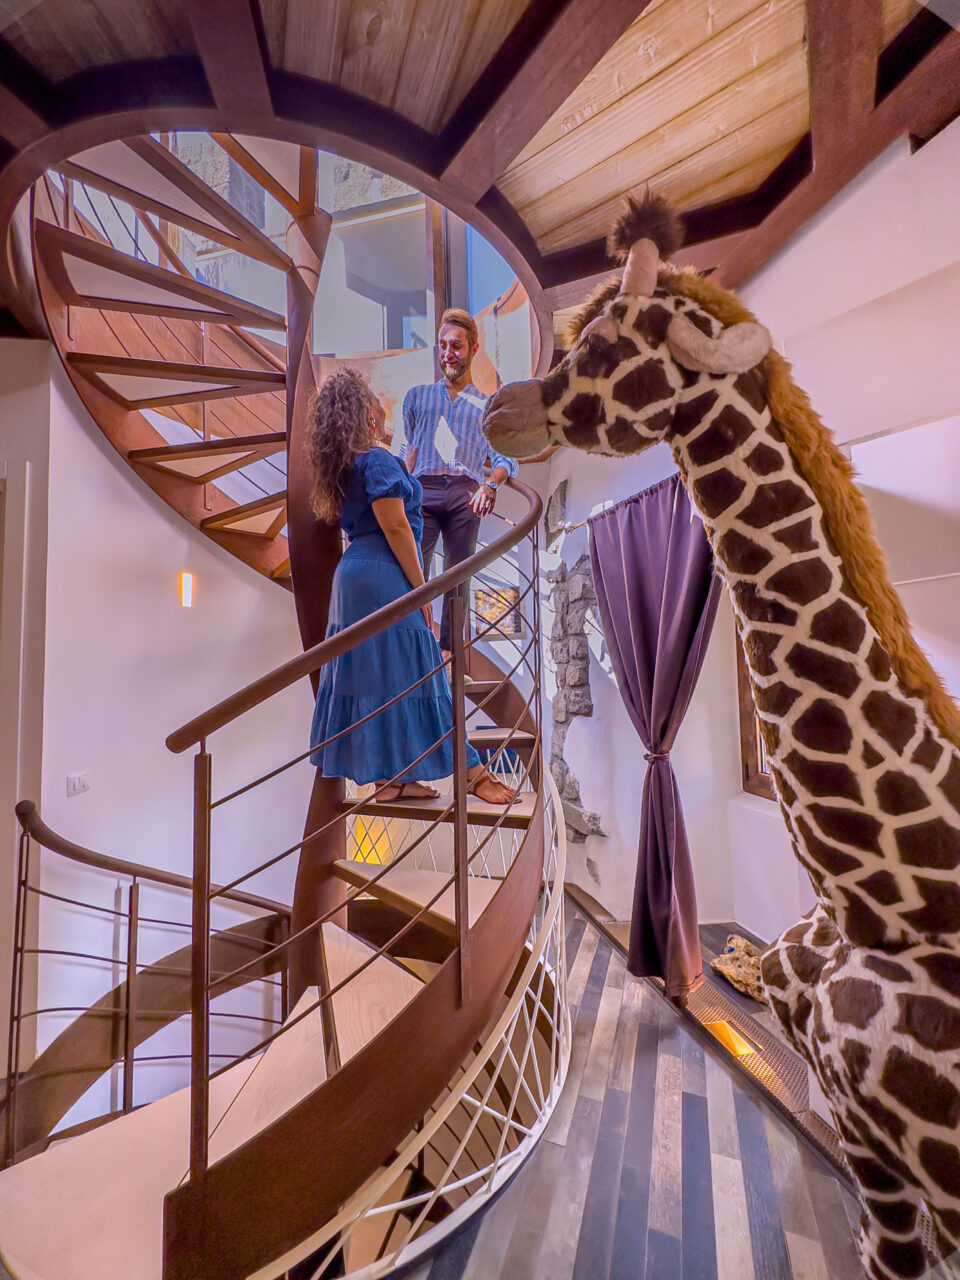 alloggio con colazione inclusa nel Lazio, foto di due ragazzi su una rampa di scala e una giraffa di antiquariato
